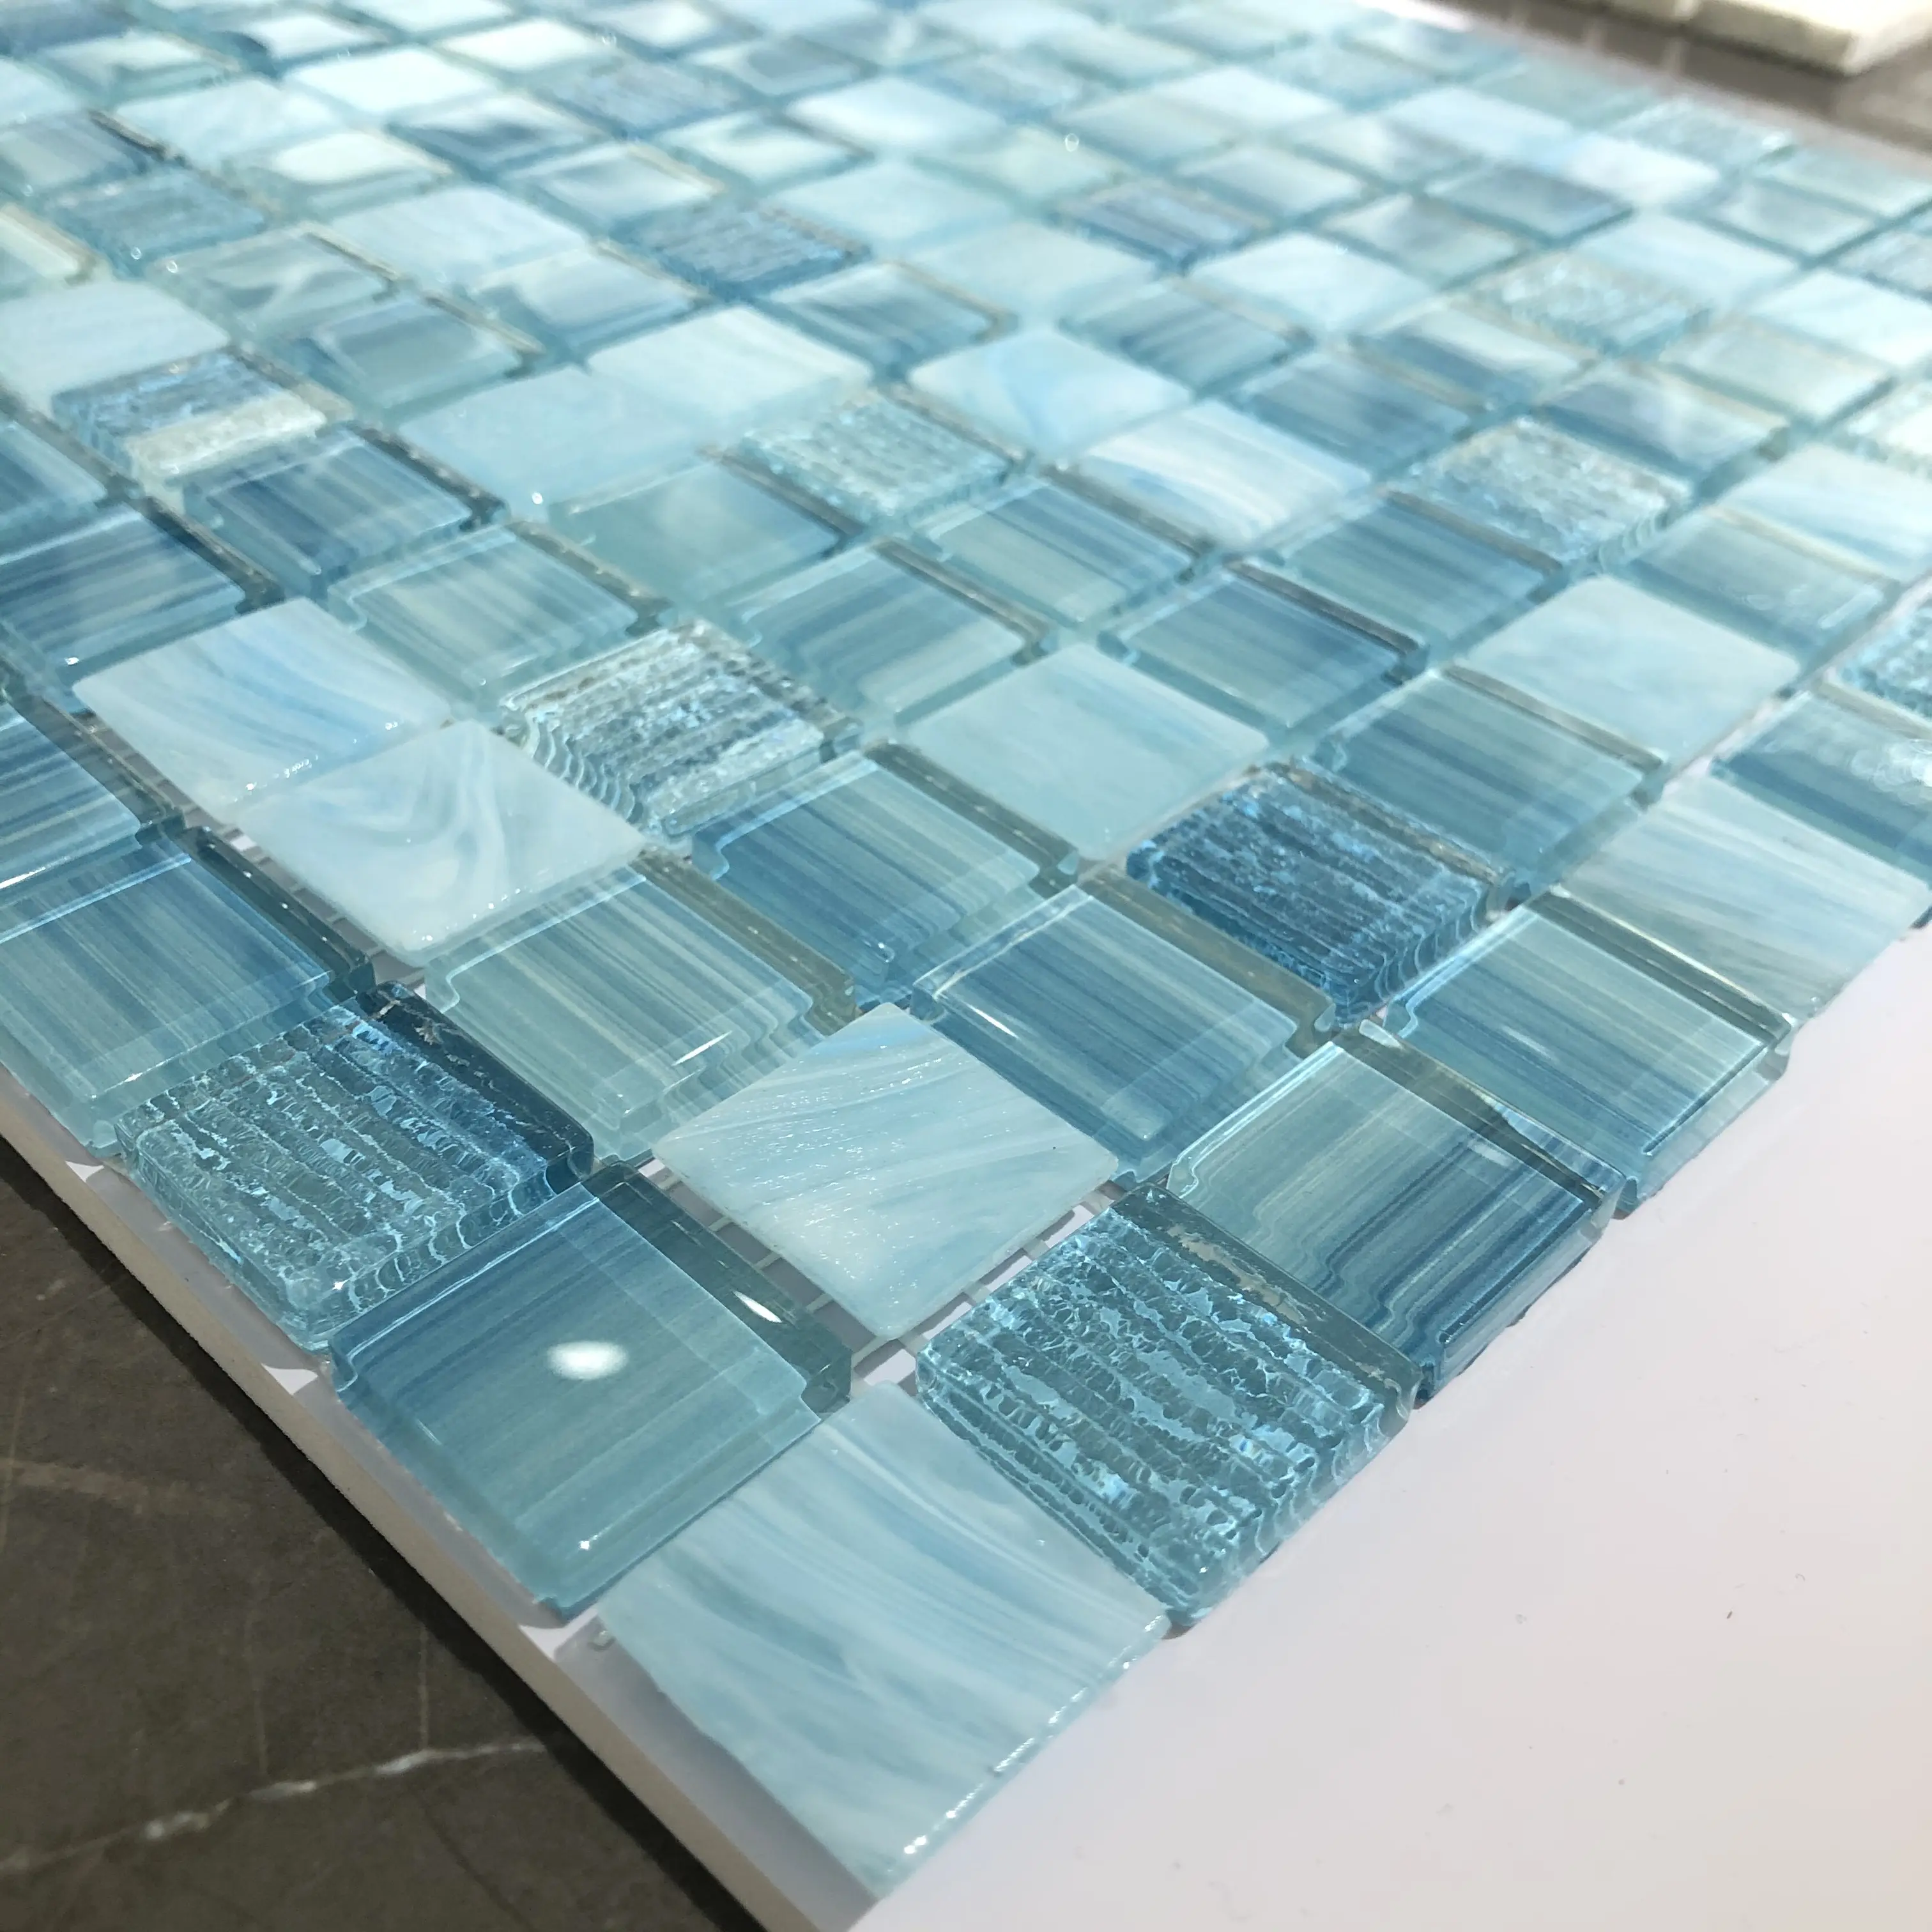 مزيج أزرق اللون حمام سباحة استخدام مثالي الكريستال الزجاج بركة بلاط الفسيفساء الأرضيات